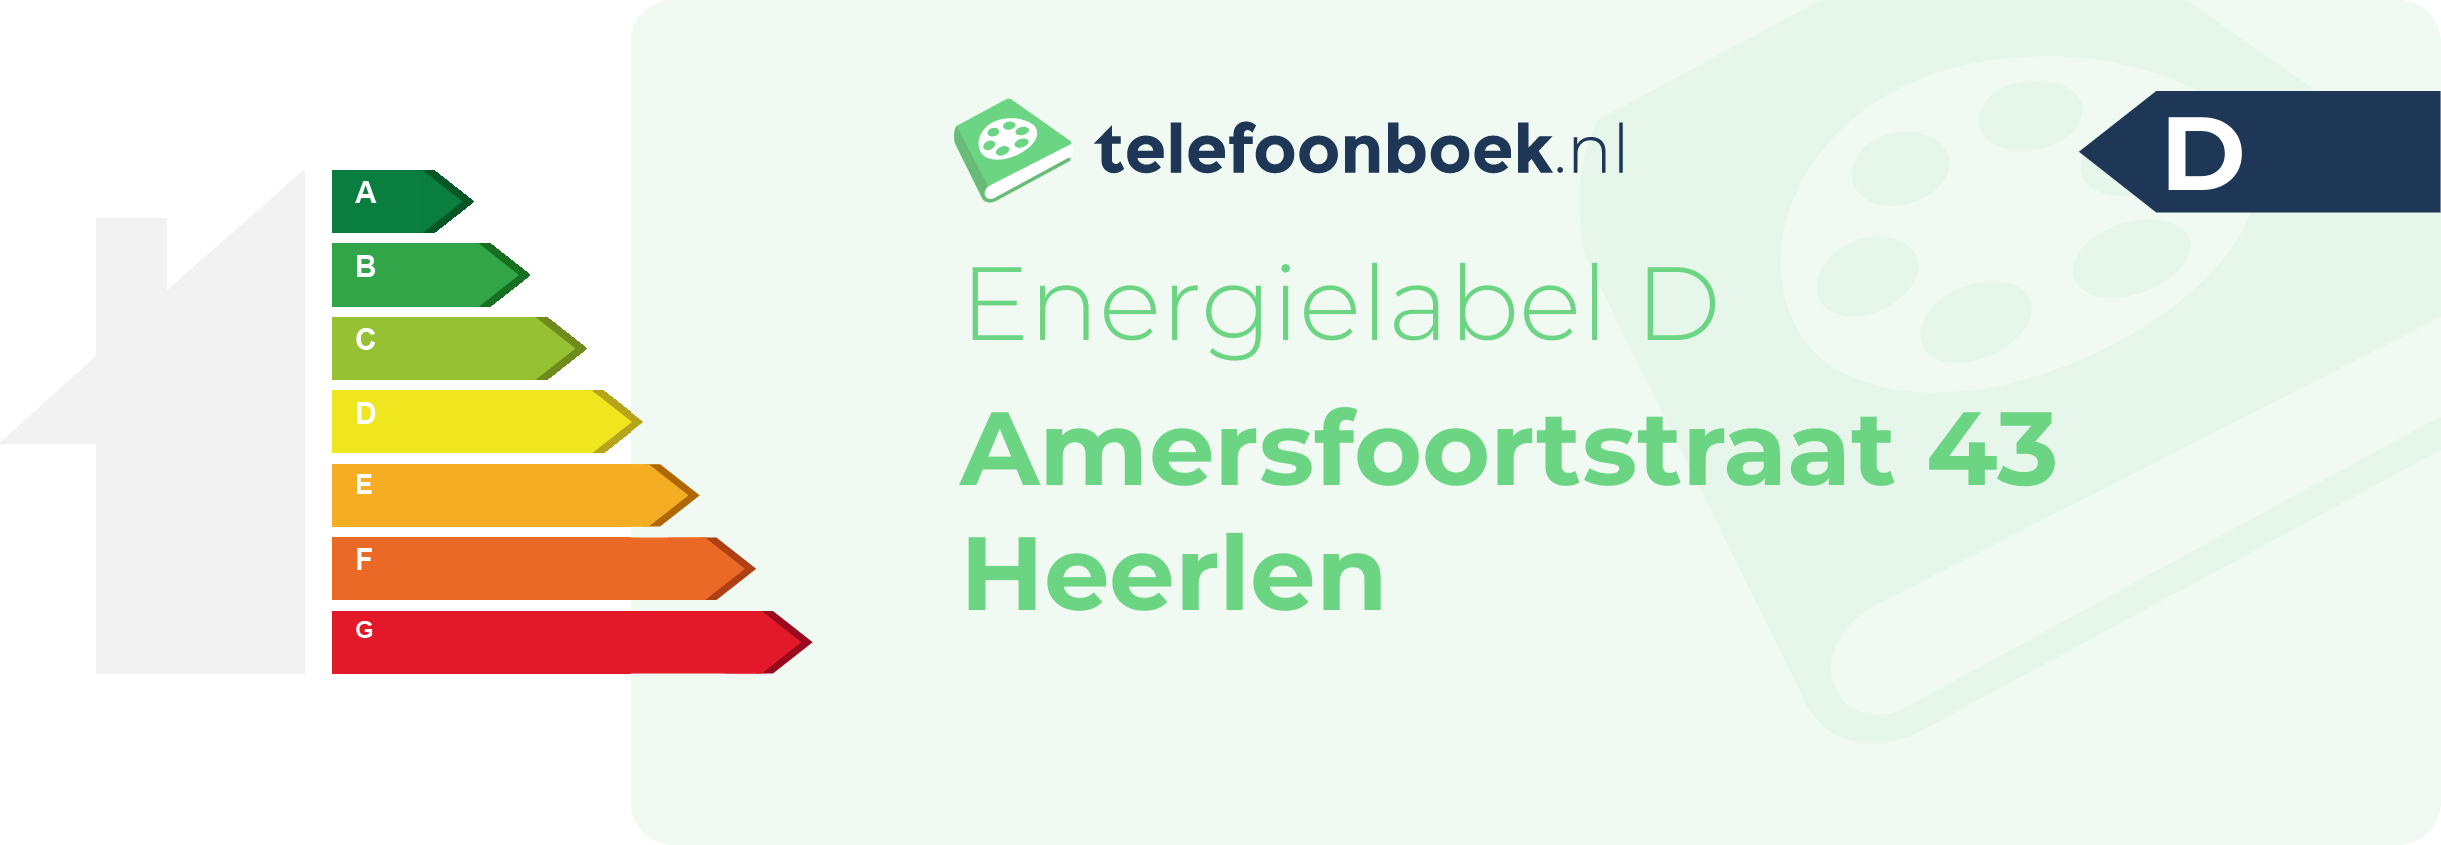 Energielabel Amersfoortstraat 43 Heerlen